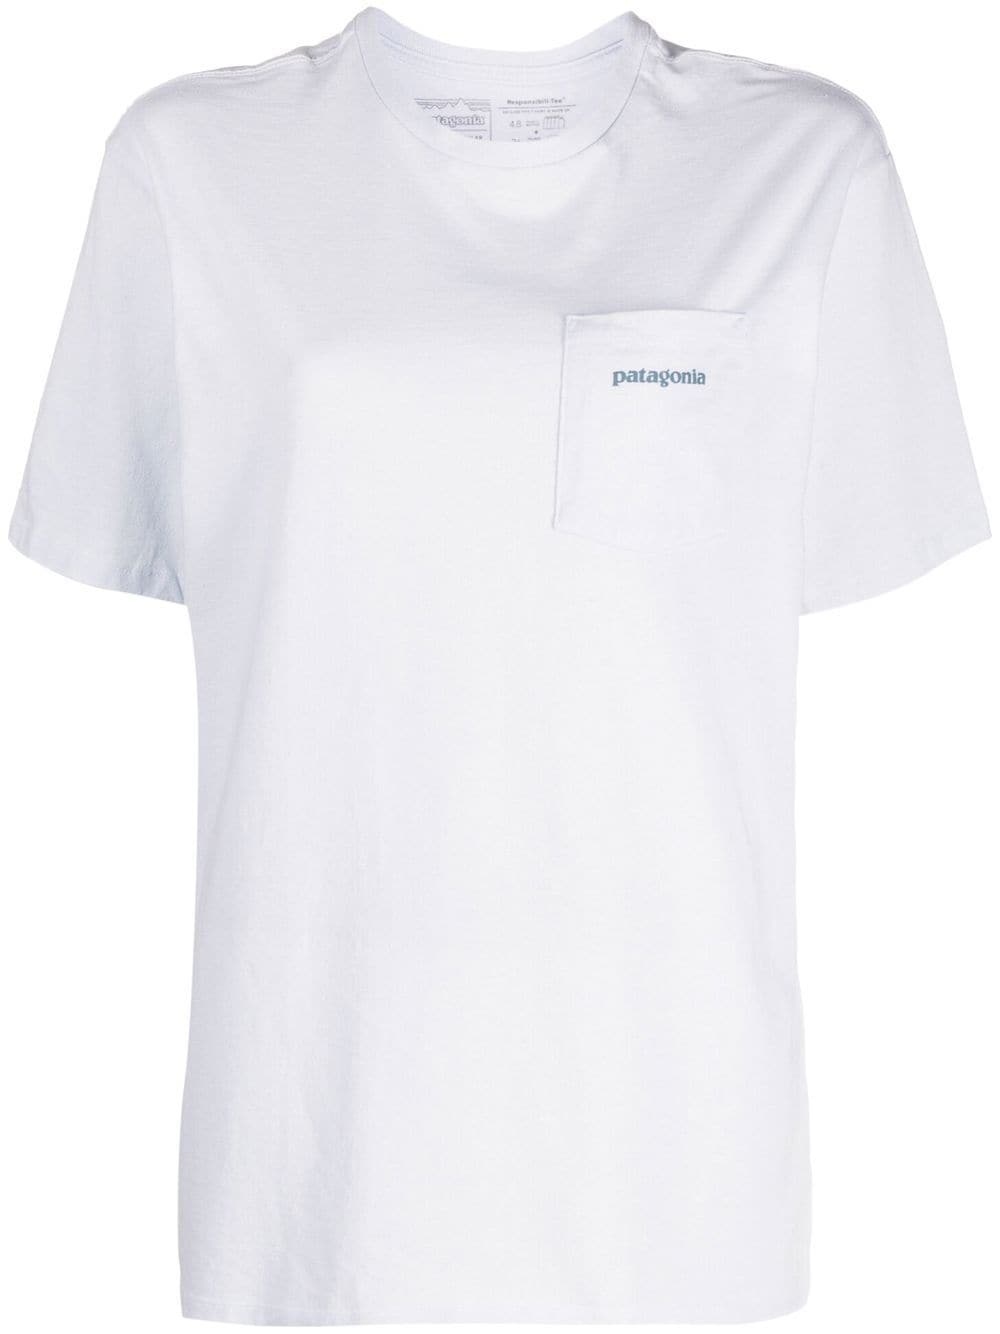 Patagonia T-shirt Bianco Uomo - 1